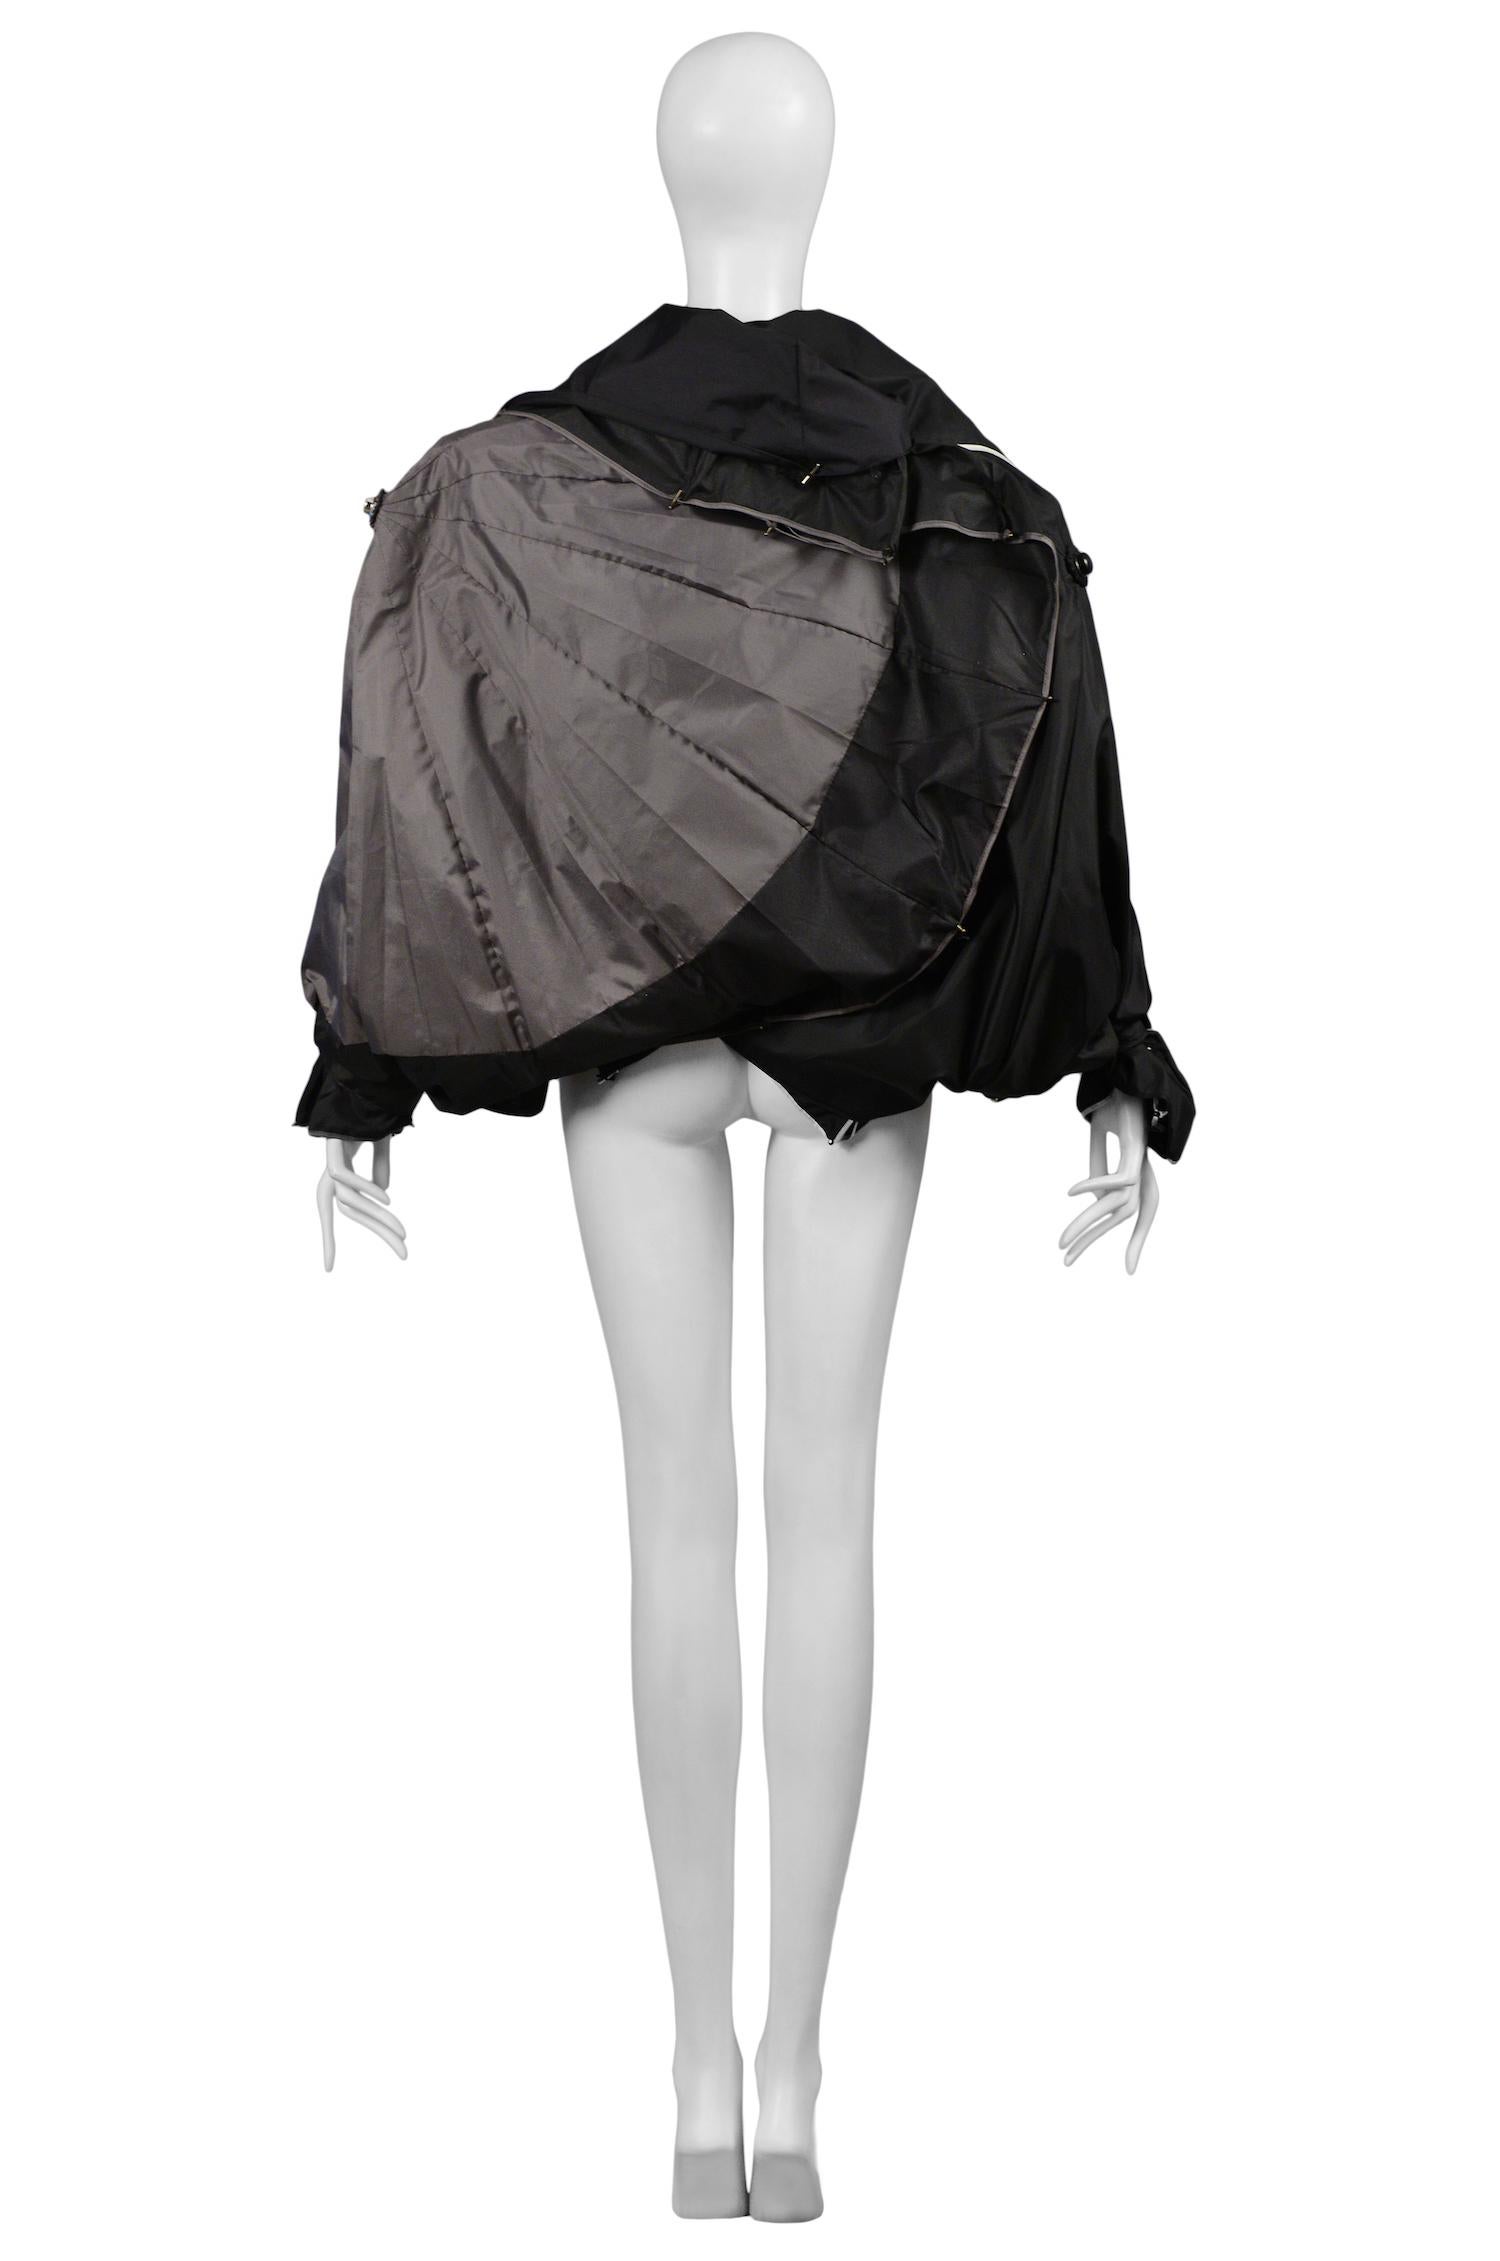 Black Vintage Maison Martin Margiela Artisanal Umbrella Jacket 2008